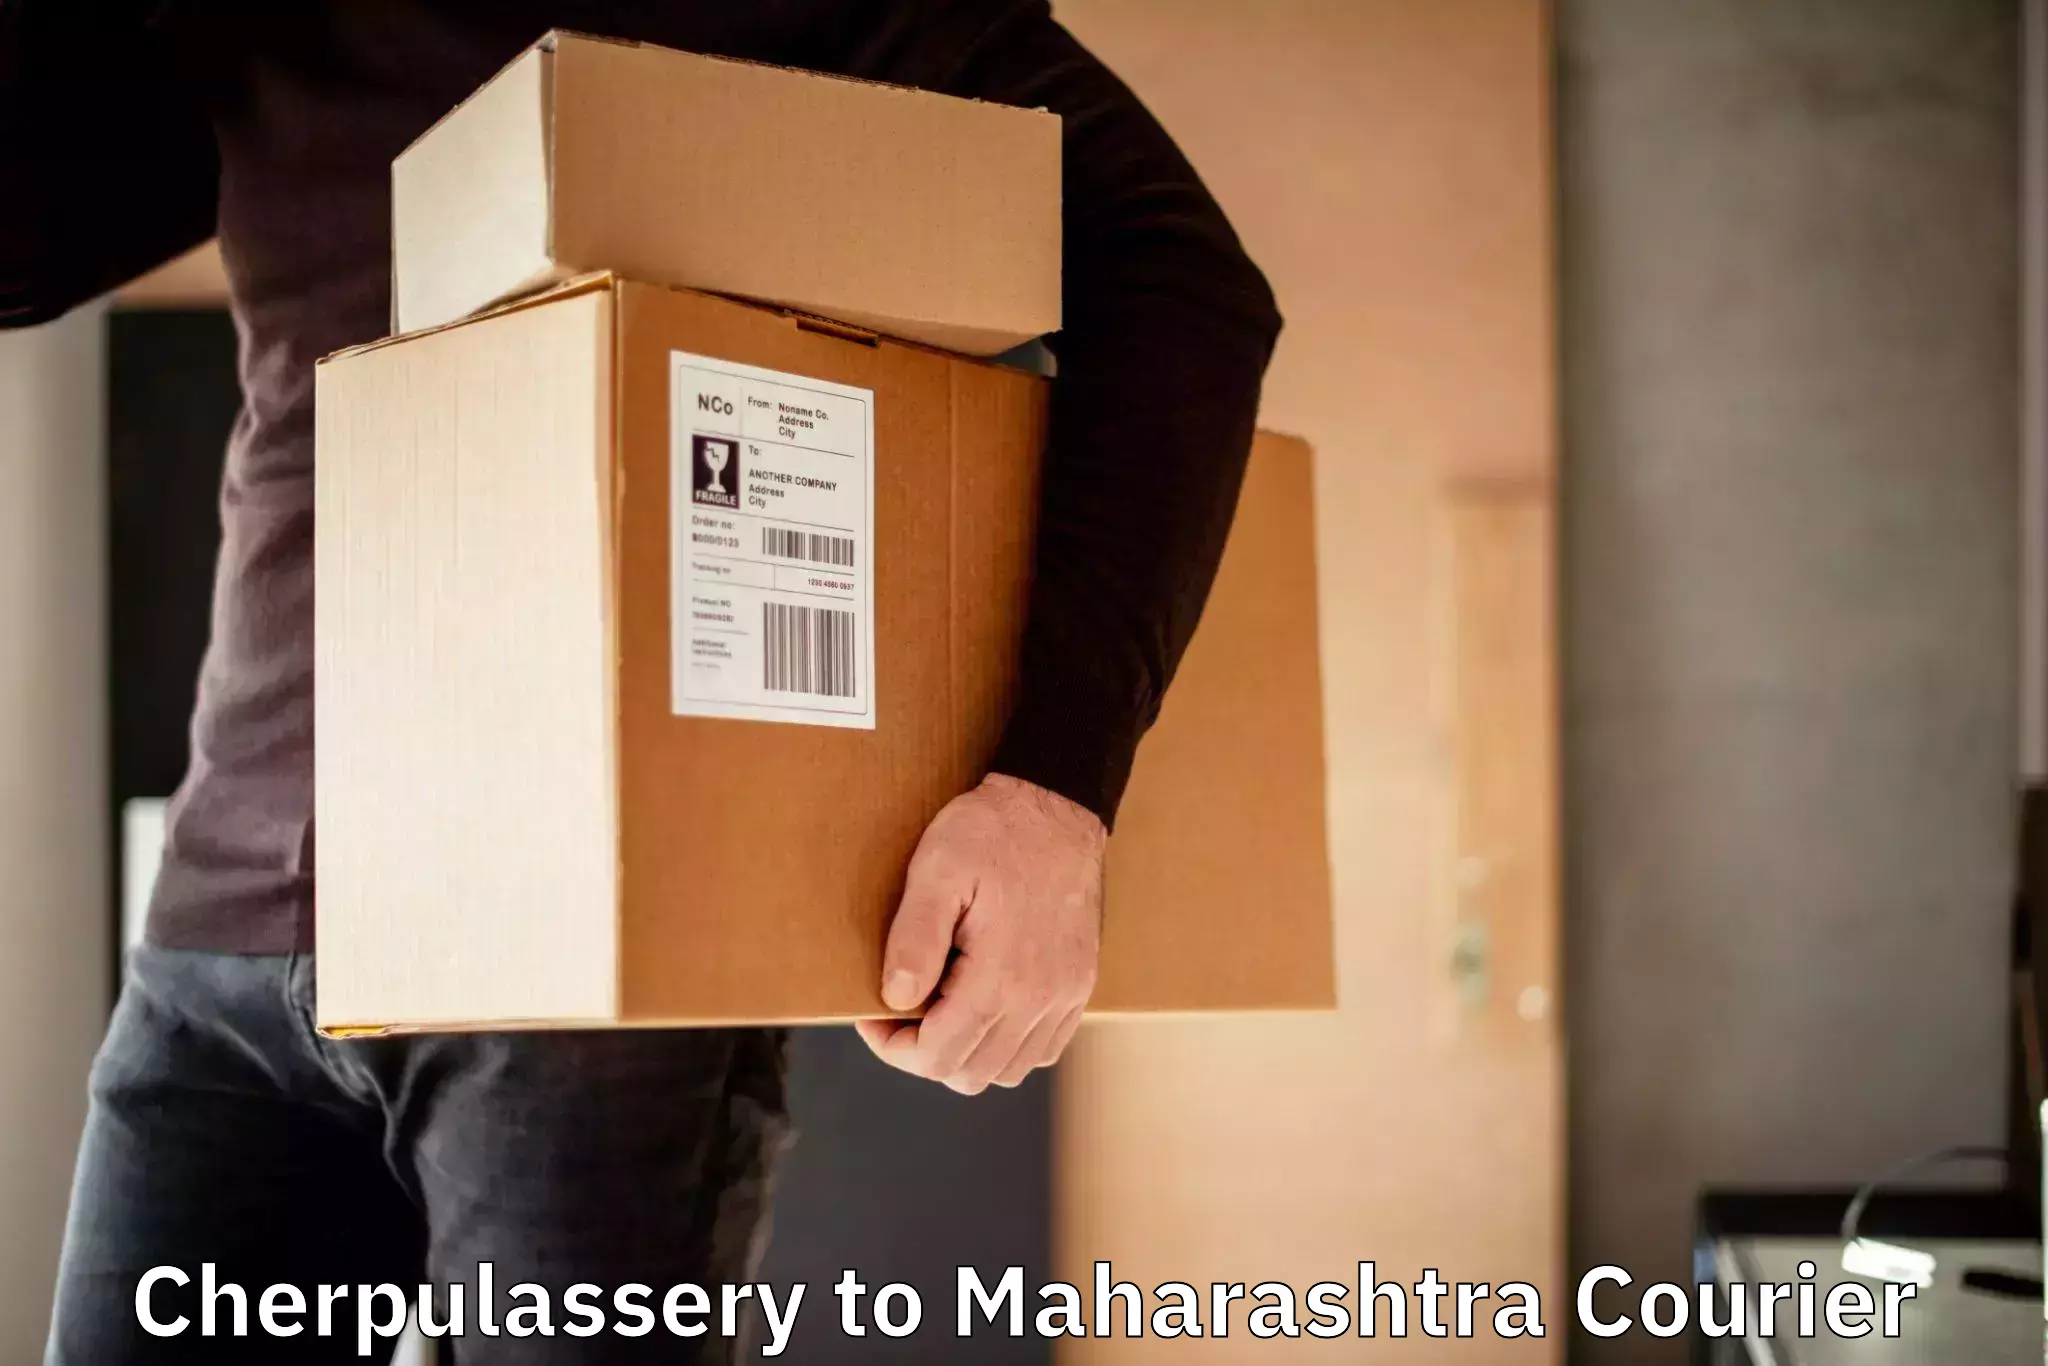 Ground shipping Cherpulassery to Maharashtra